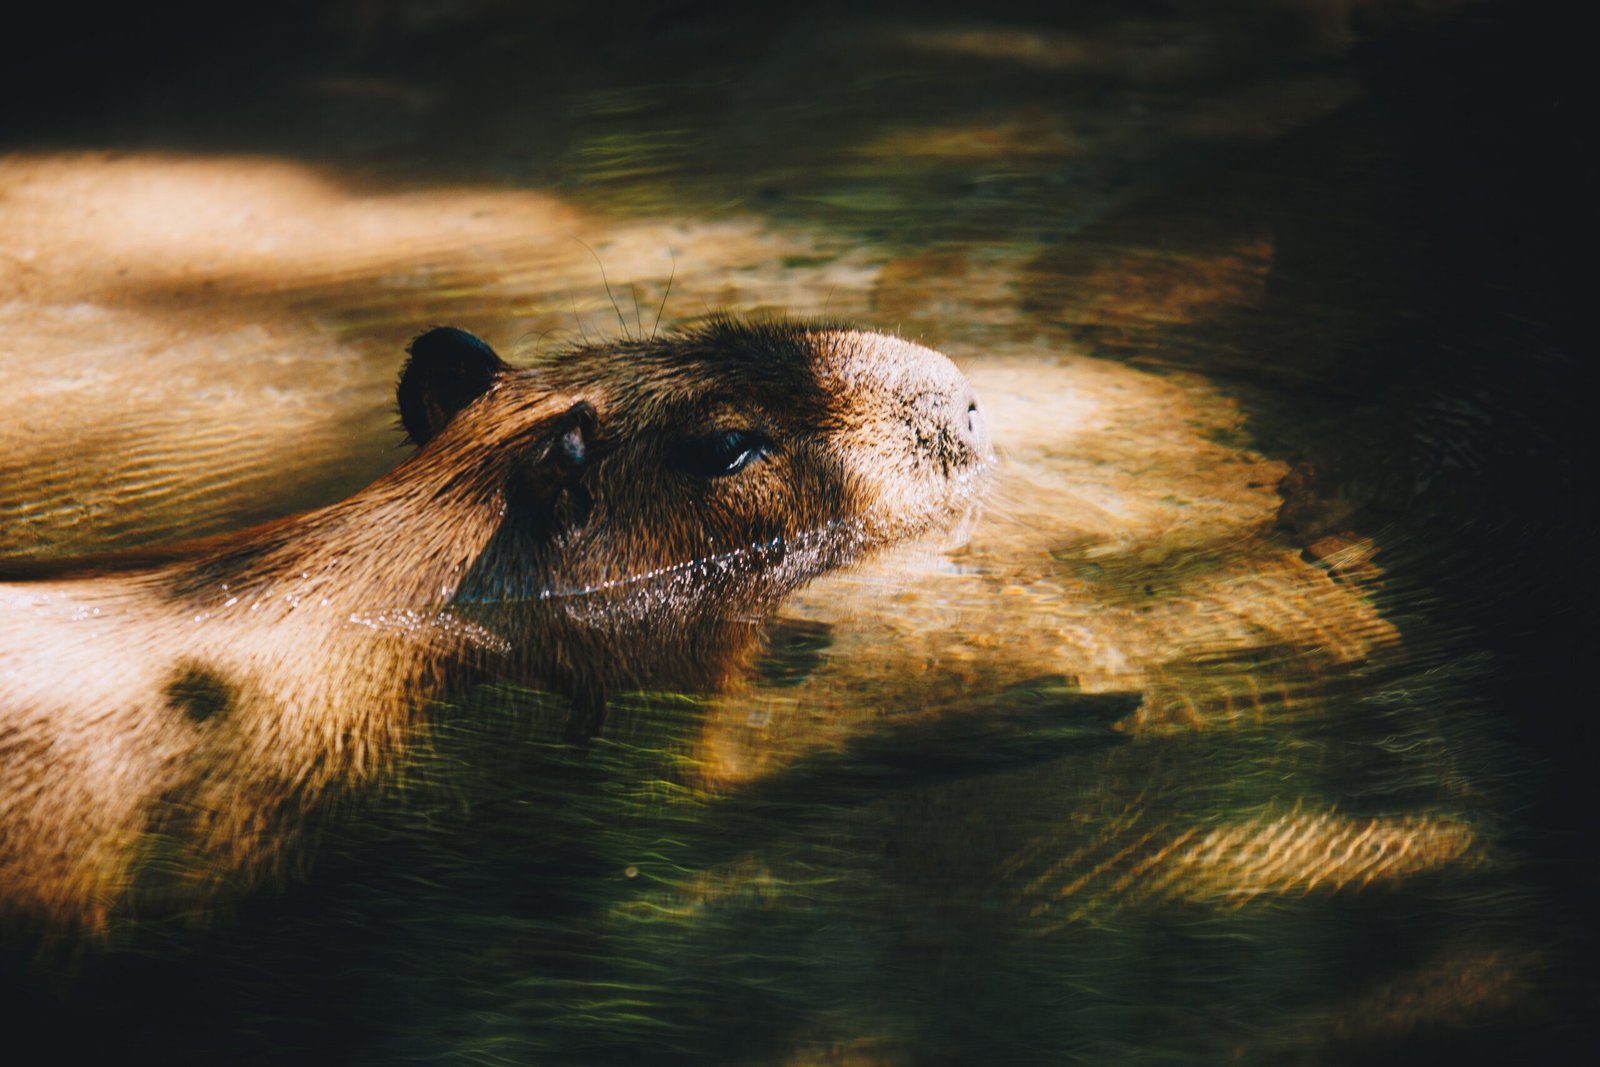 The Big Capybara Stuffed Animal